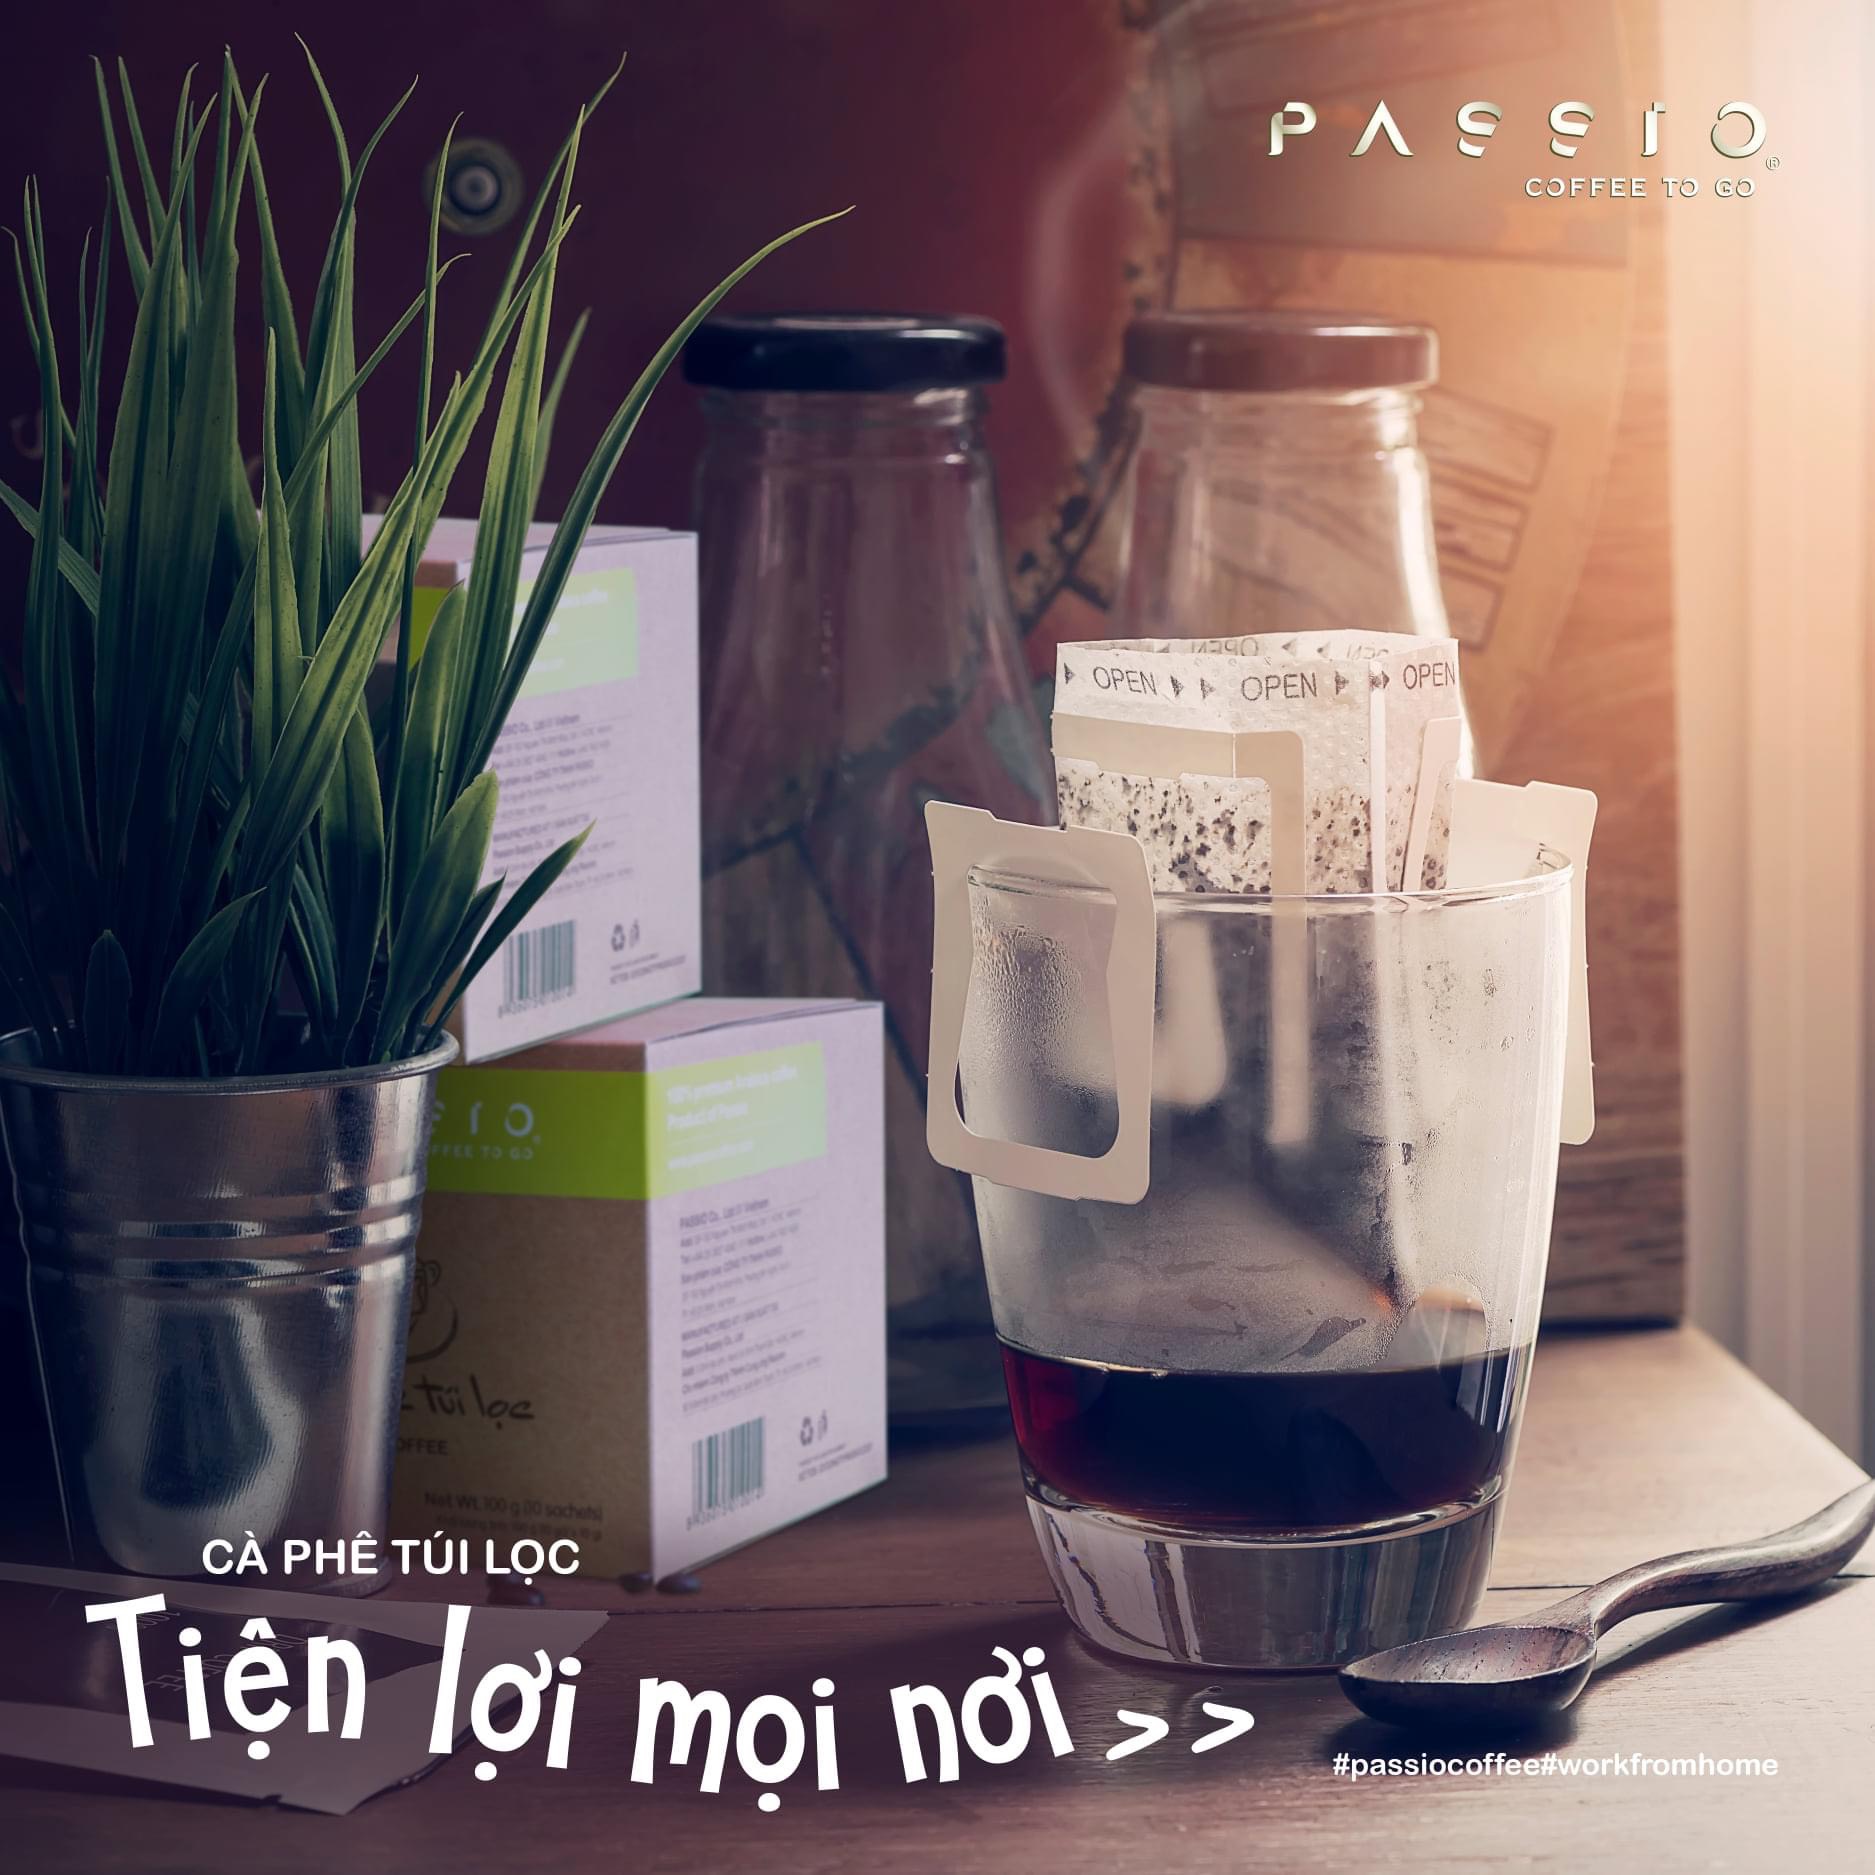 Cà phê túi lọc nguyên chất rang mộc - Passio Coffee (Hộp 10 gói x 10g)